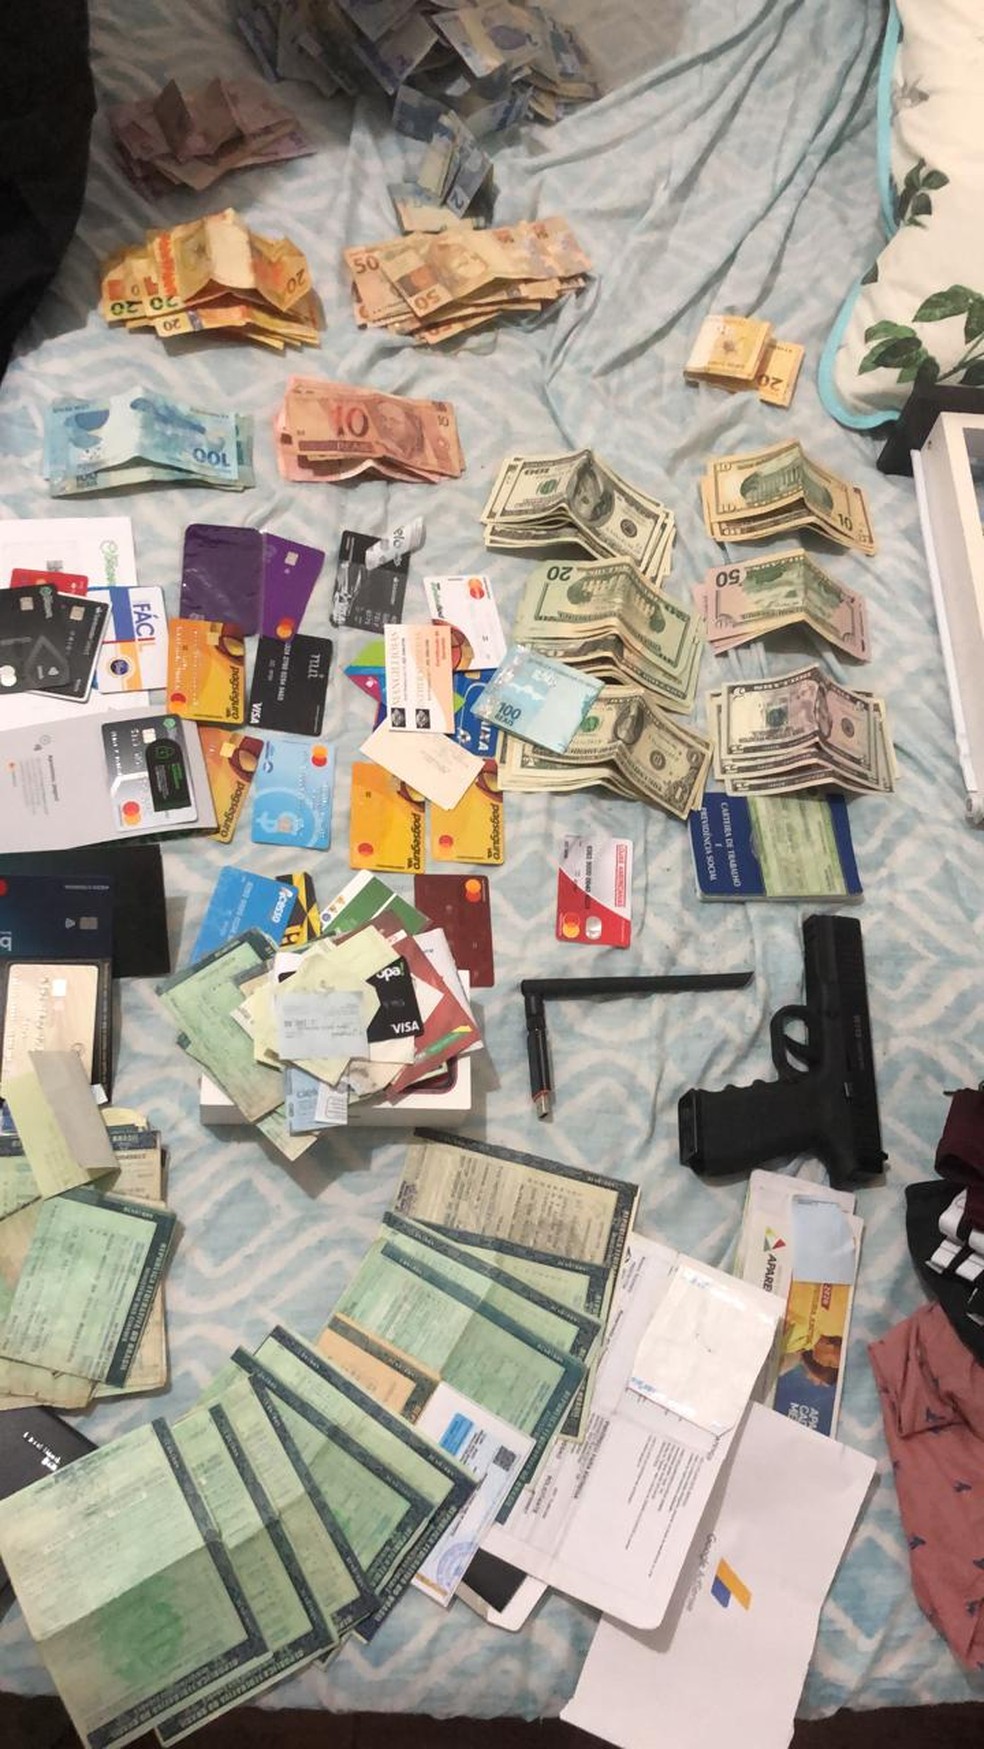 Documentos, cartões, arma e dinheiro apreendidos na Bahia, durante Operação 404 do Ministério da Justiça — Foto: Arquivo pessoal